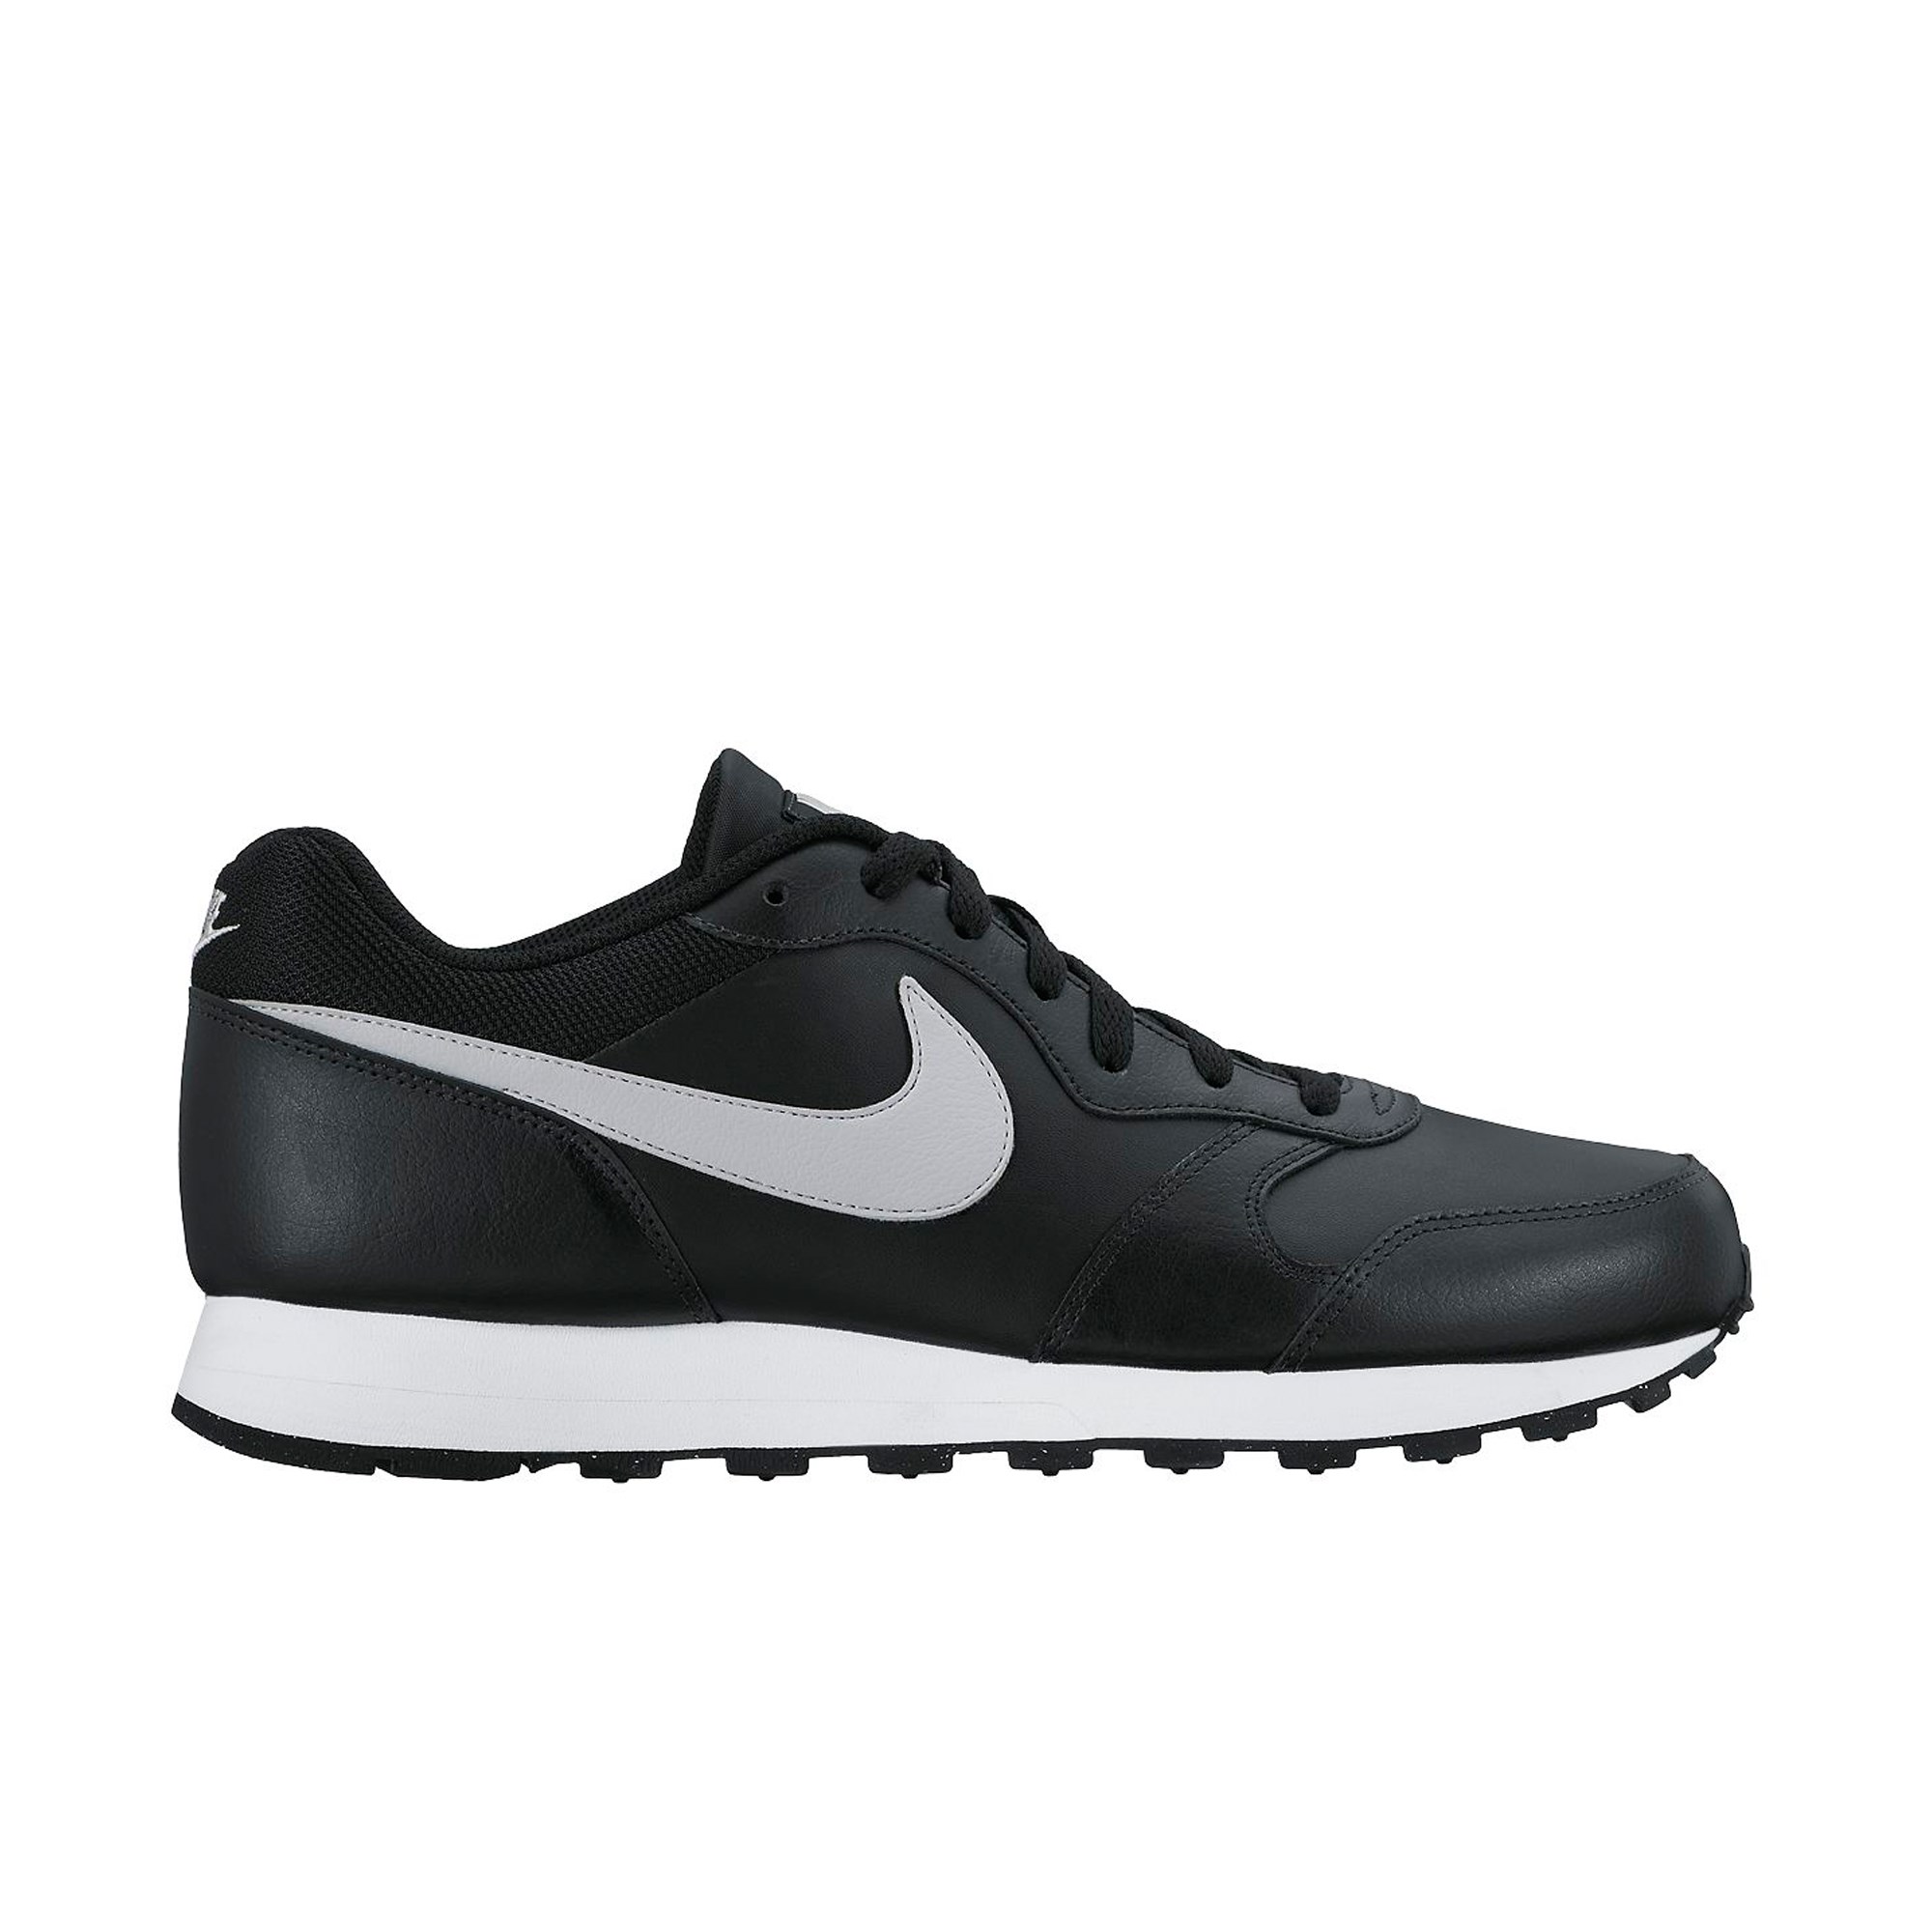 Nike MD Runner 2 Leather Erkek Spor Ayakkabı Ürün kodu: 749795-001 |  Etichet Sport